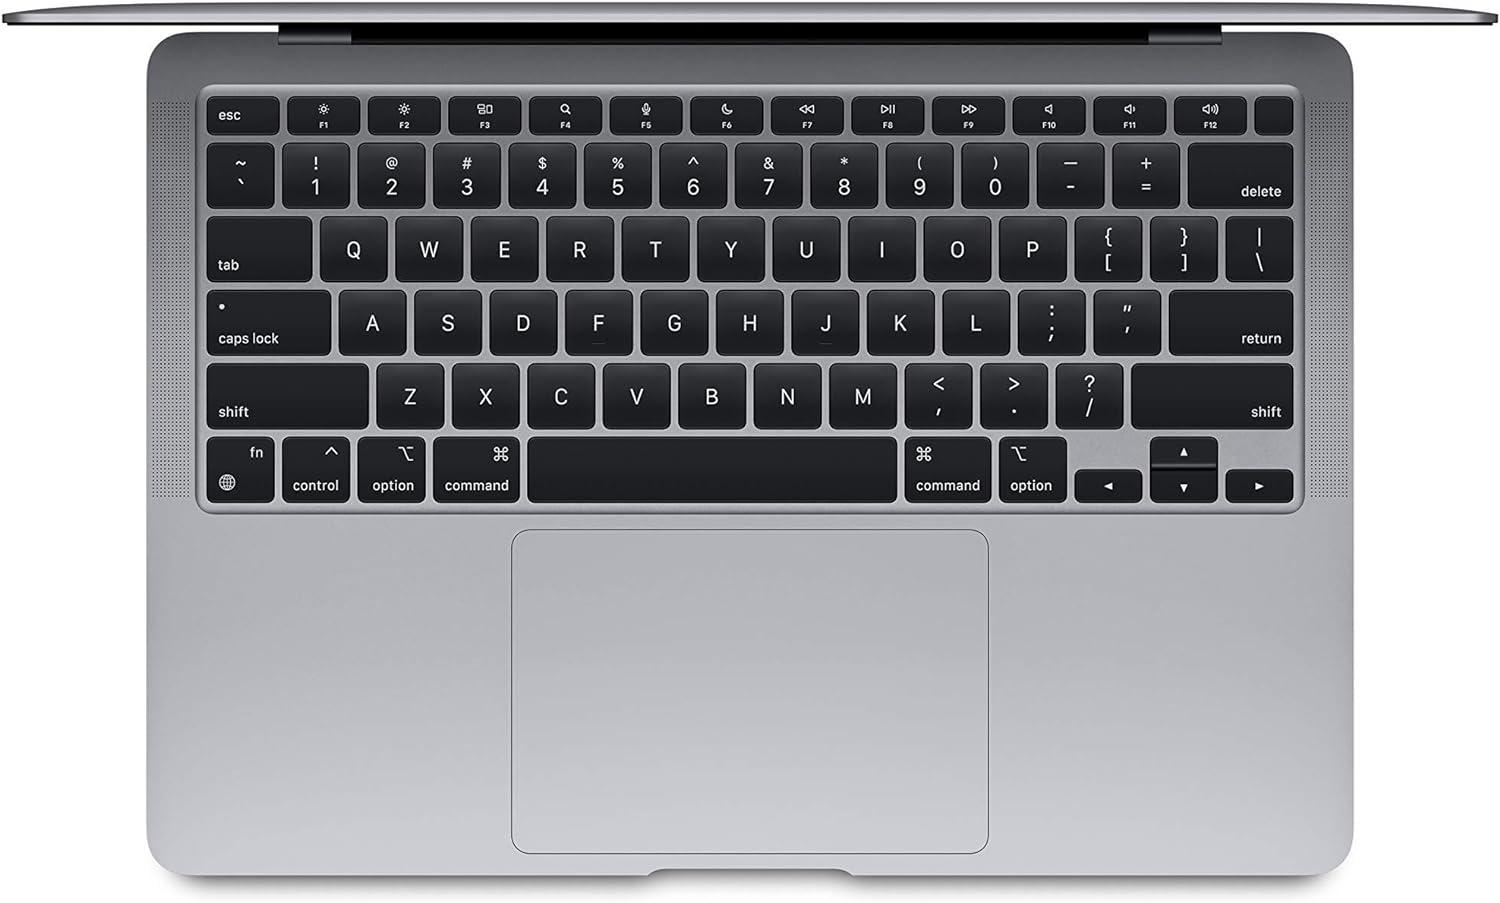 MacBook Air Retina 13.3" (2018) Core i5 8GB 128GB SSD  Space Gray MRE82LL/A (No Camera) - Good